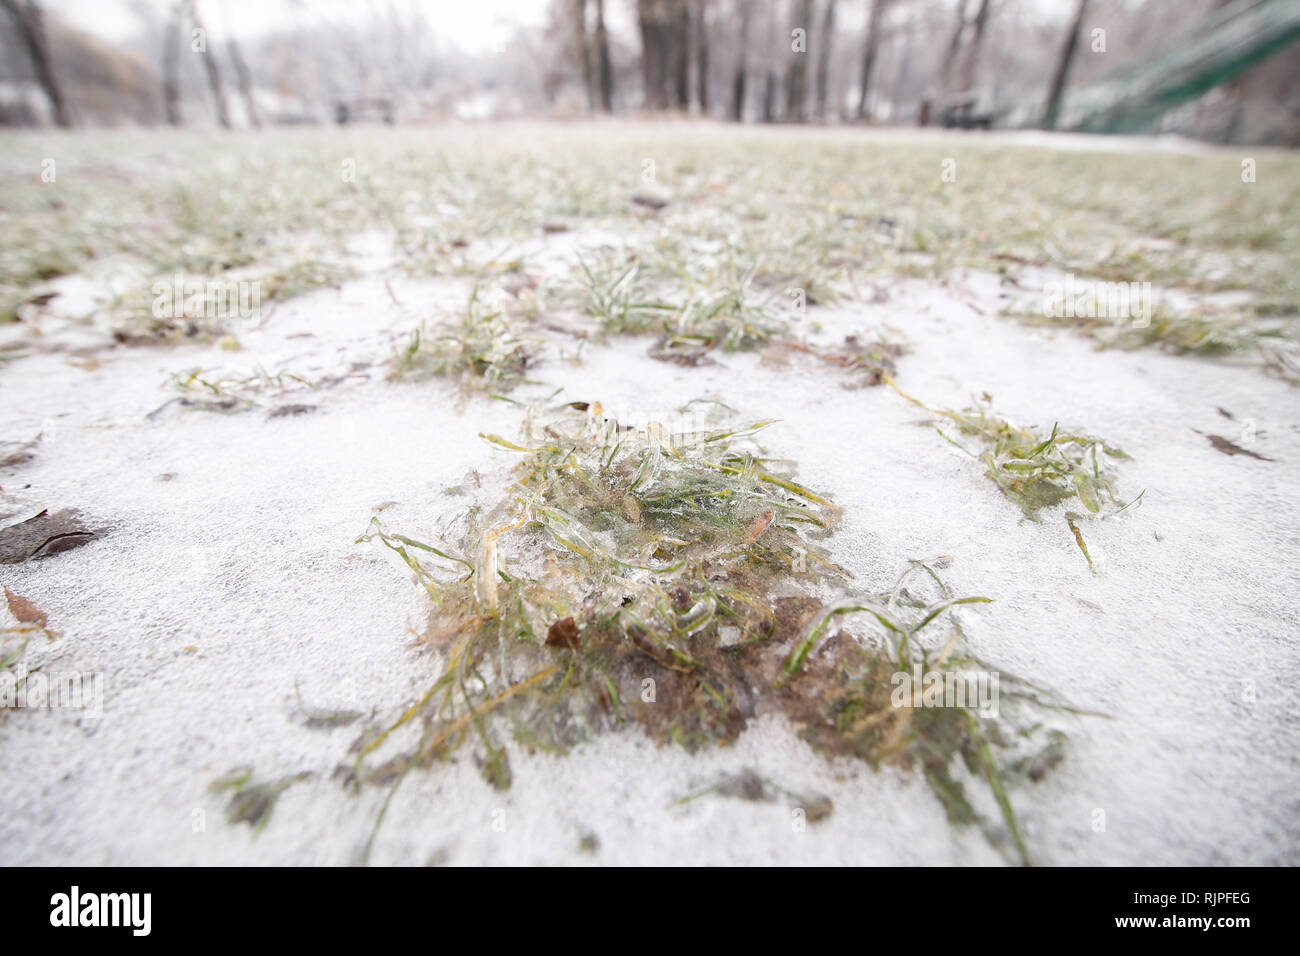 Gefrorenen Boden und Vegetation im Winter nach einem Regen wetter Phänomen Stockfoto